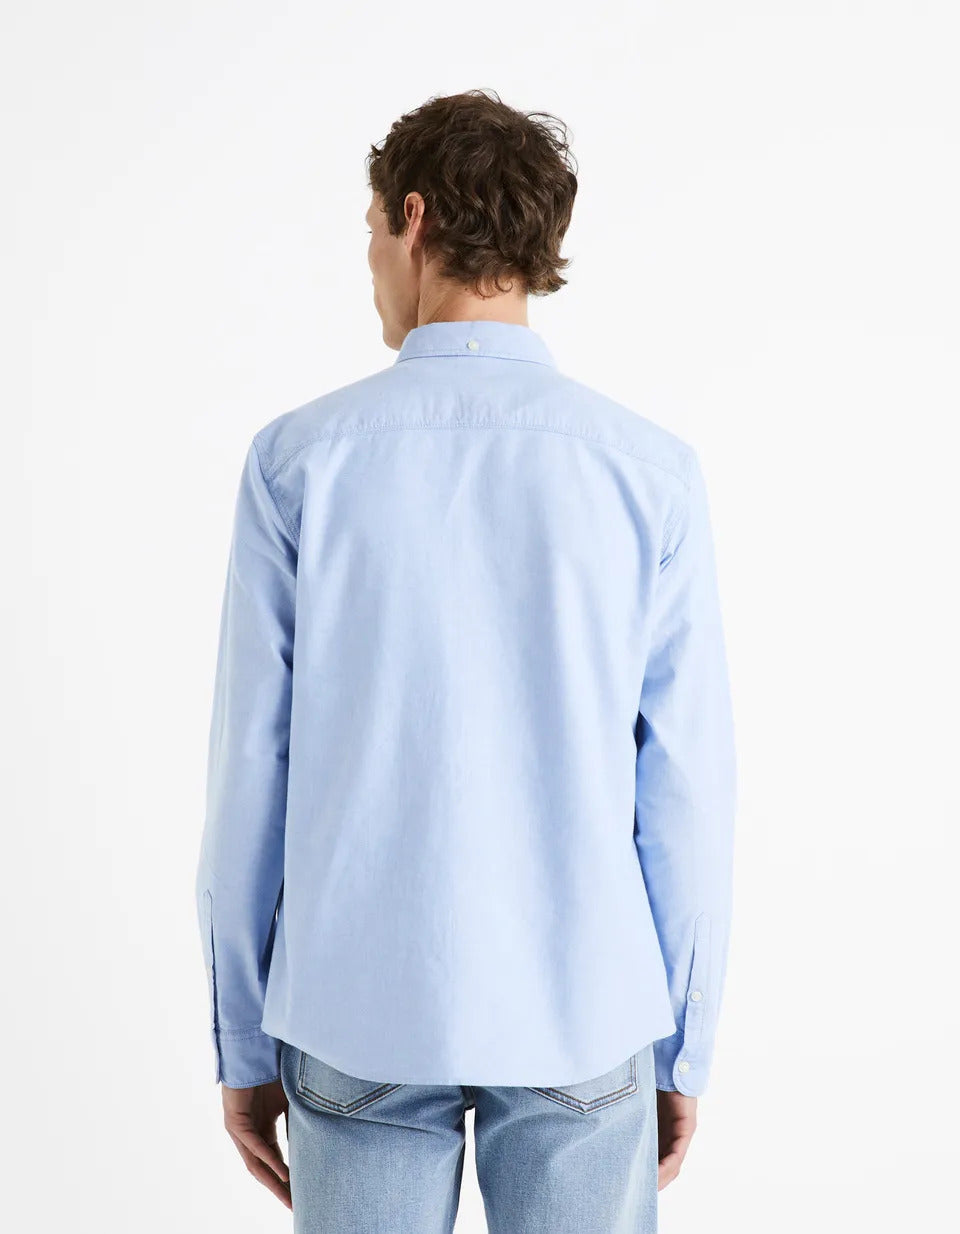 Regular-Fit 100% Cotton Oxford Shirt - Light Blue - 02